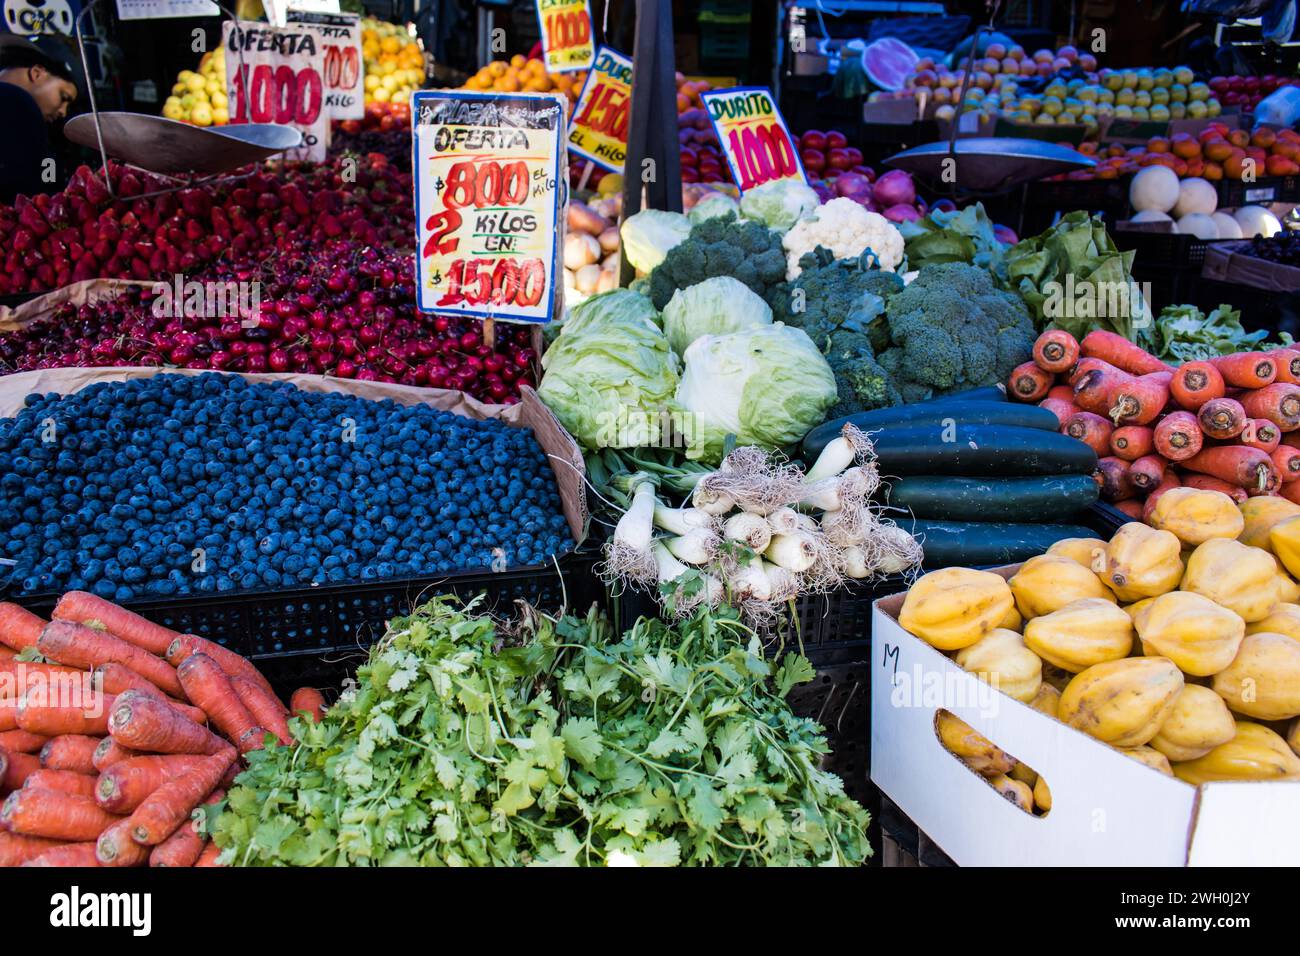 Le bancarelle del mercato che circondano il Mercado Central in Cile offrono una vivace gamma di prodotti, tra cui frutta e verdura fresche. Foto Stock